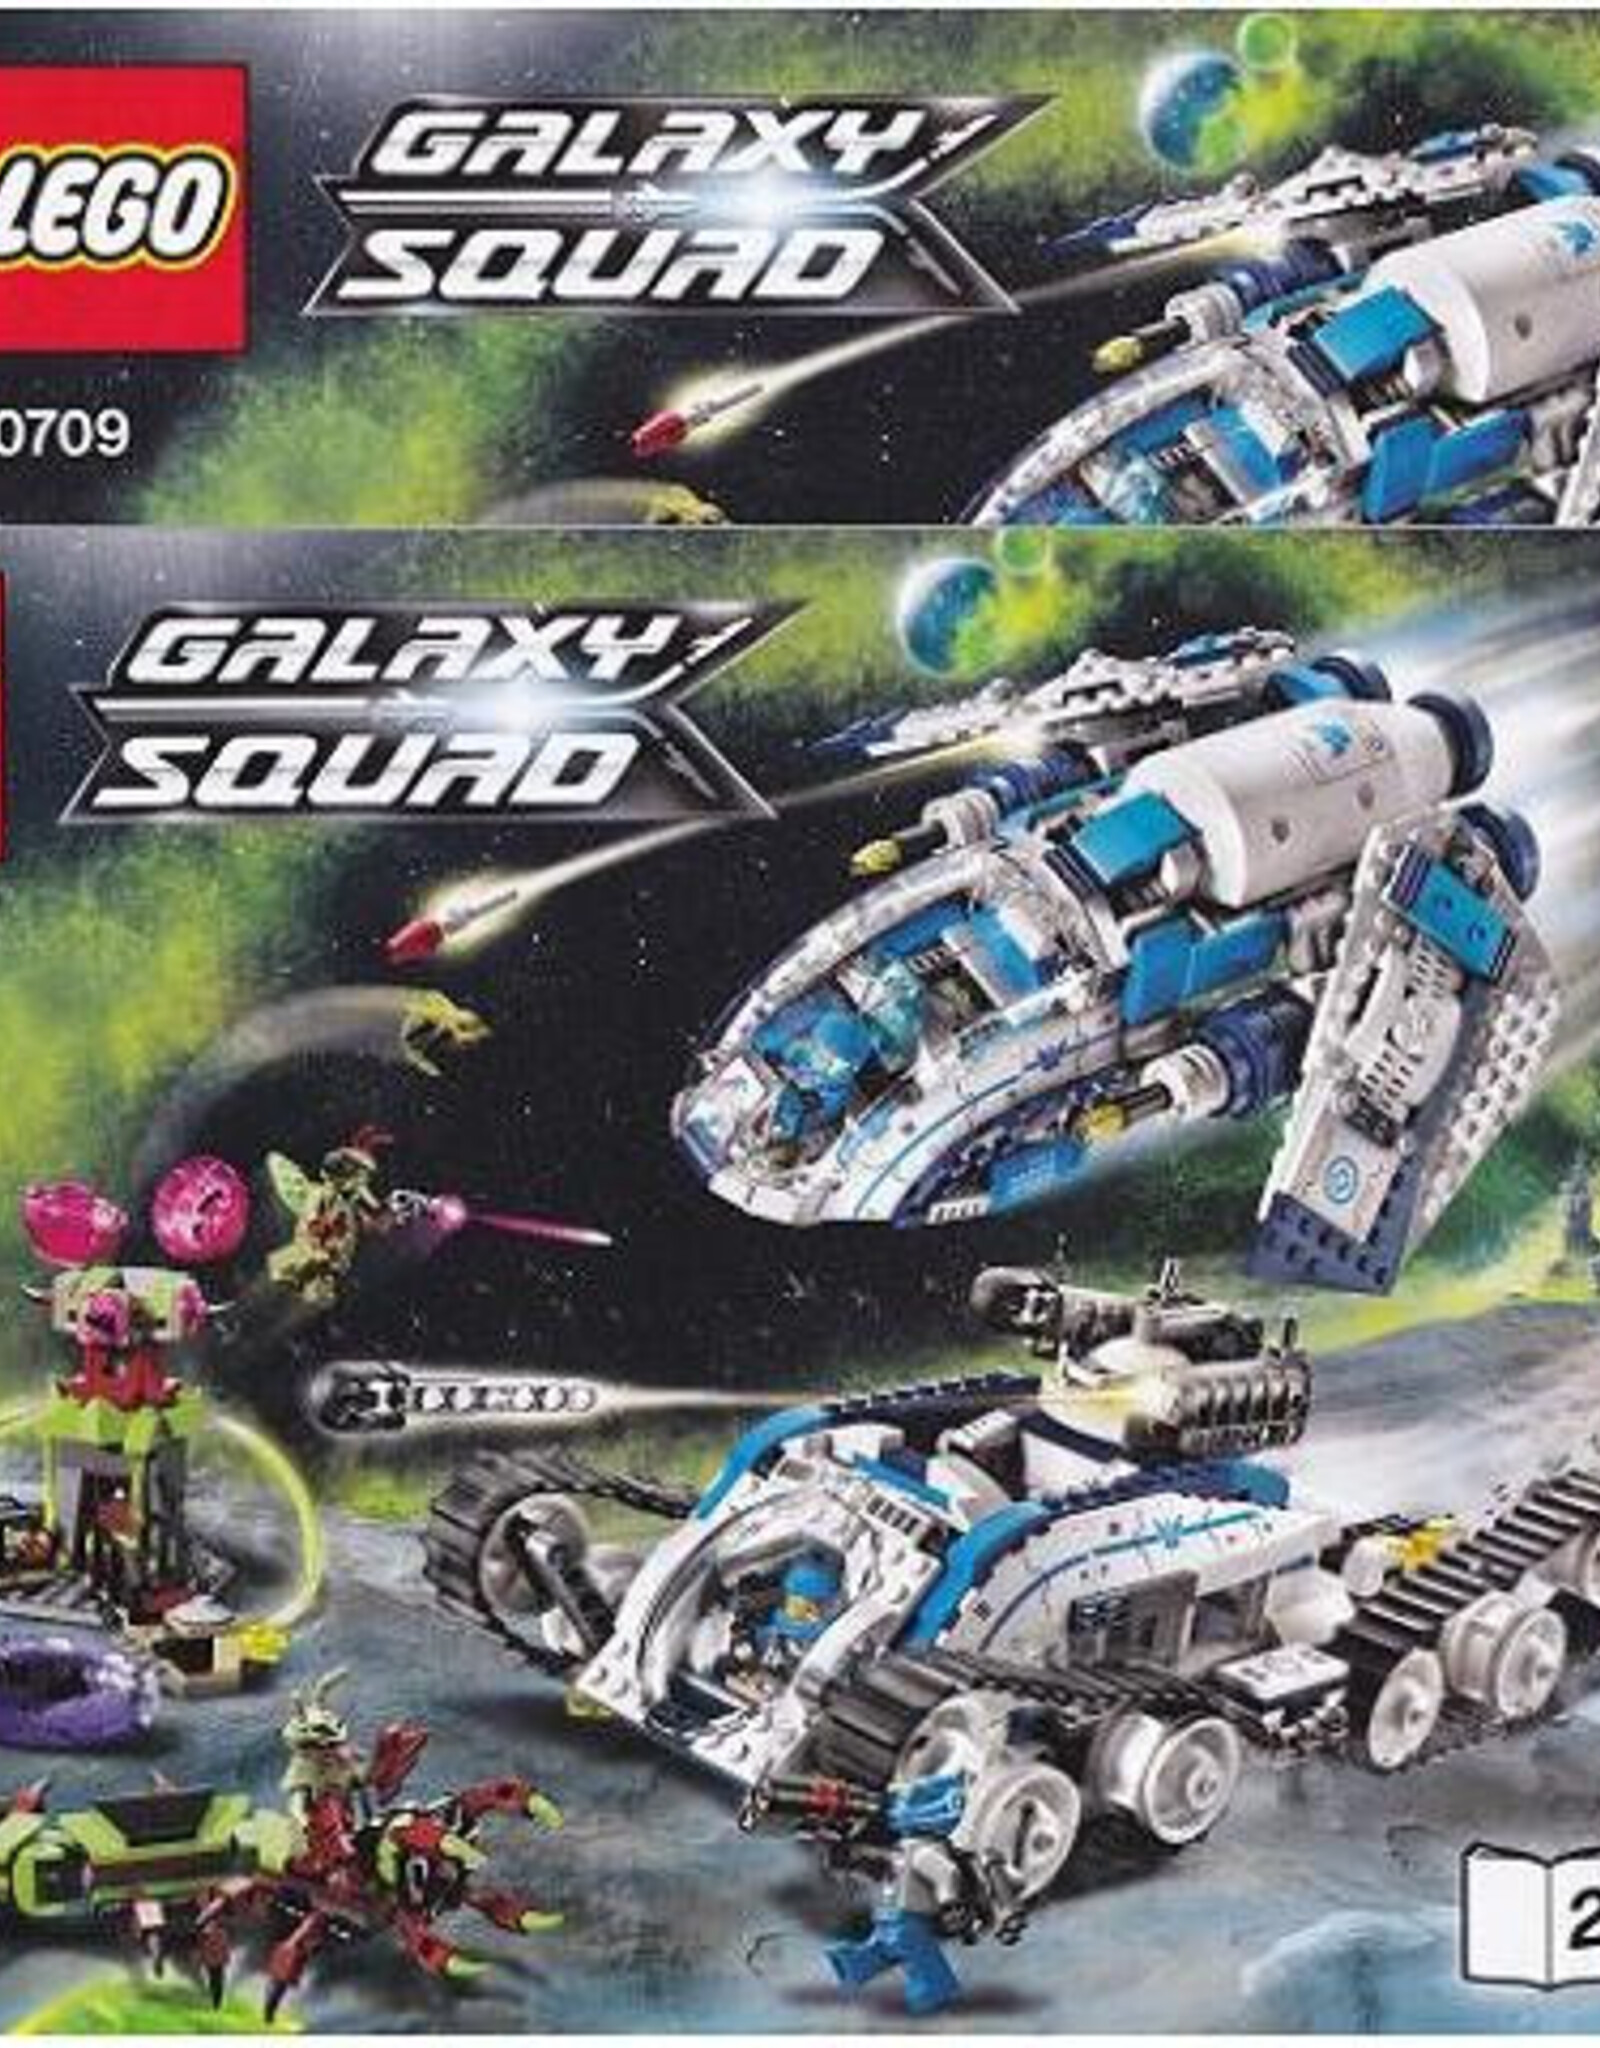 LEGO LEGO 70709 Galactic Titan GALAXY SQUAD